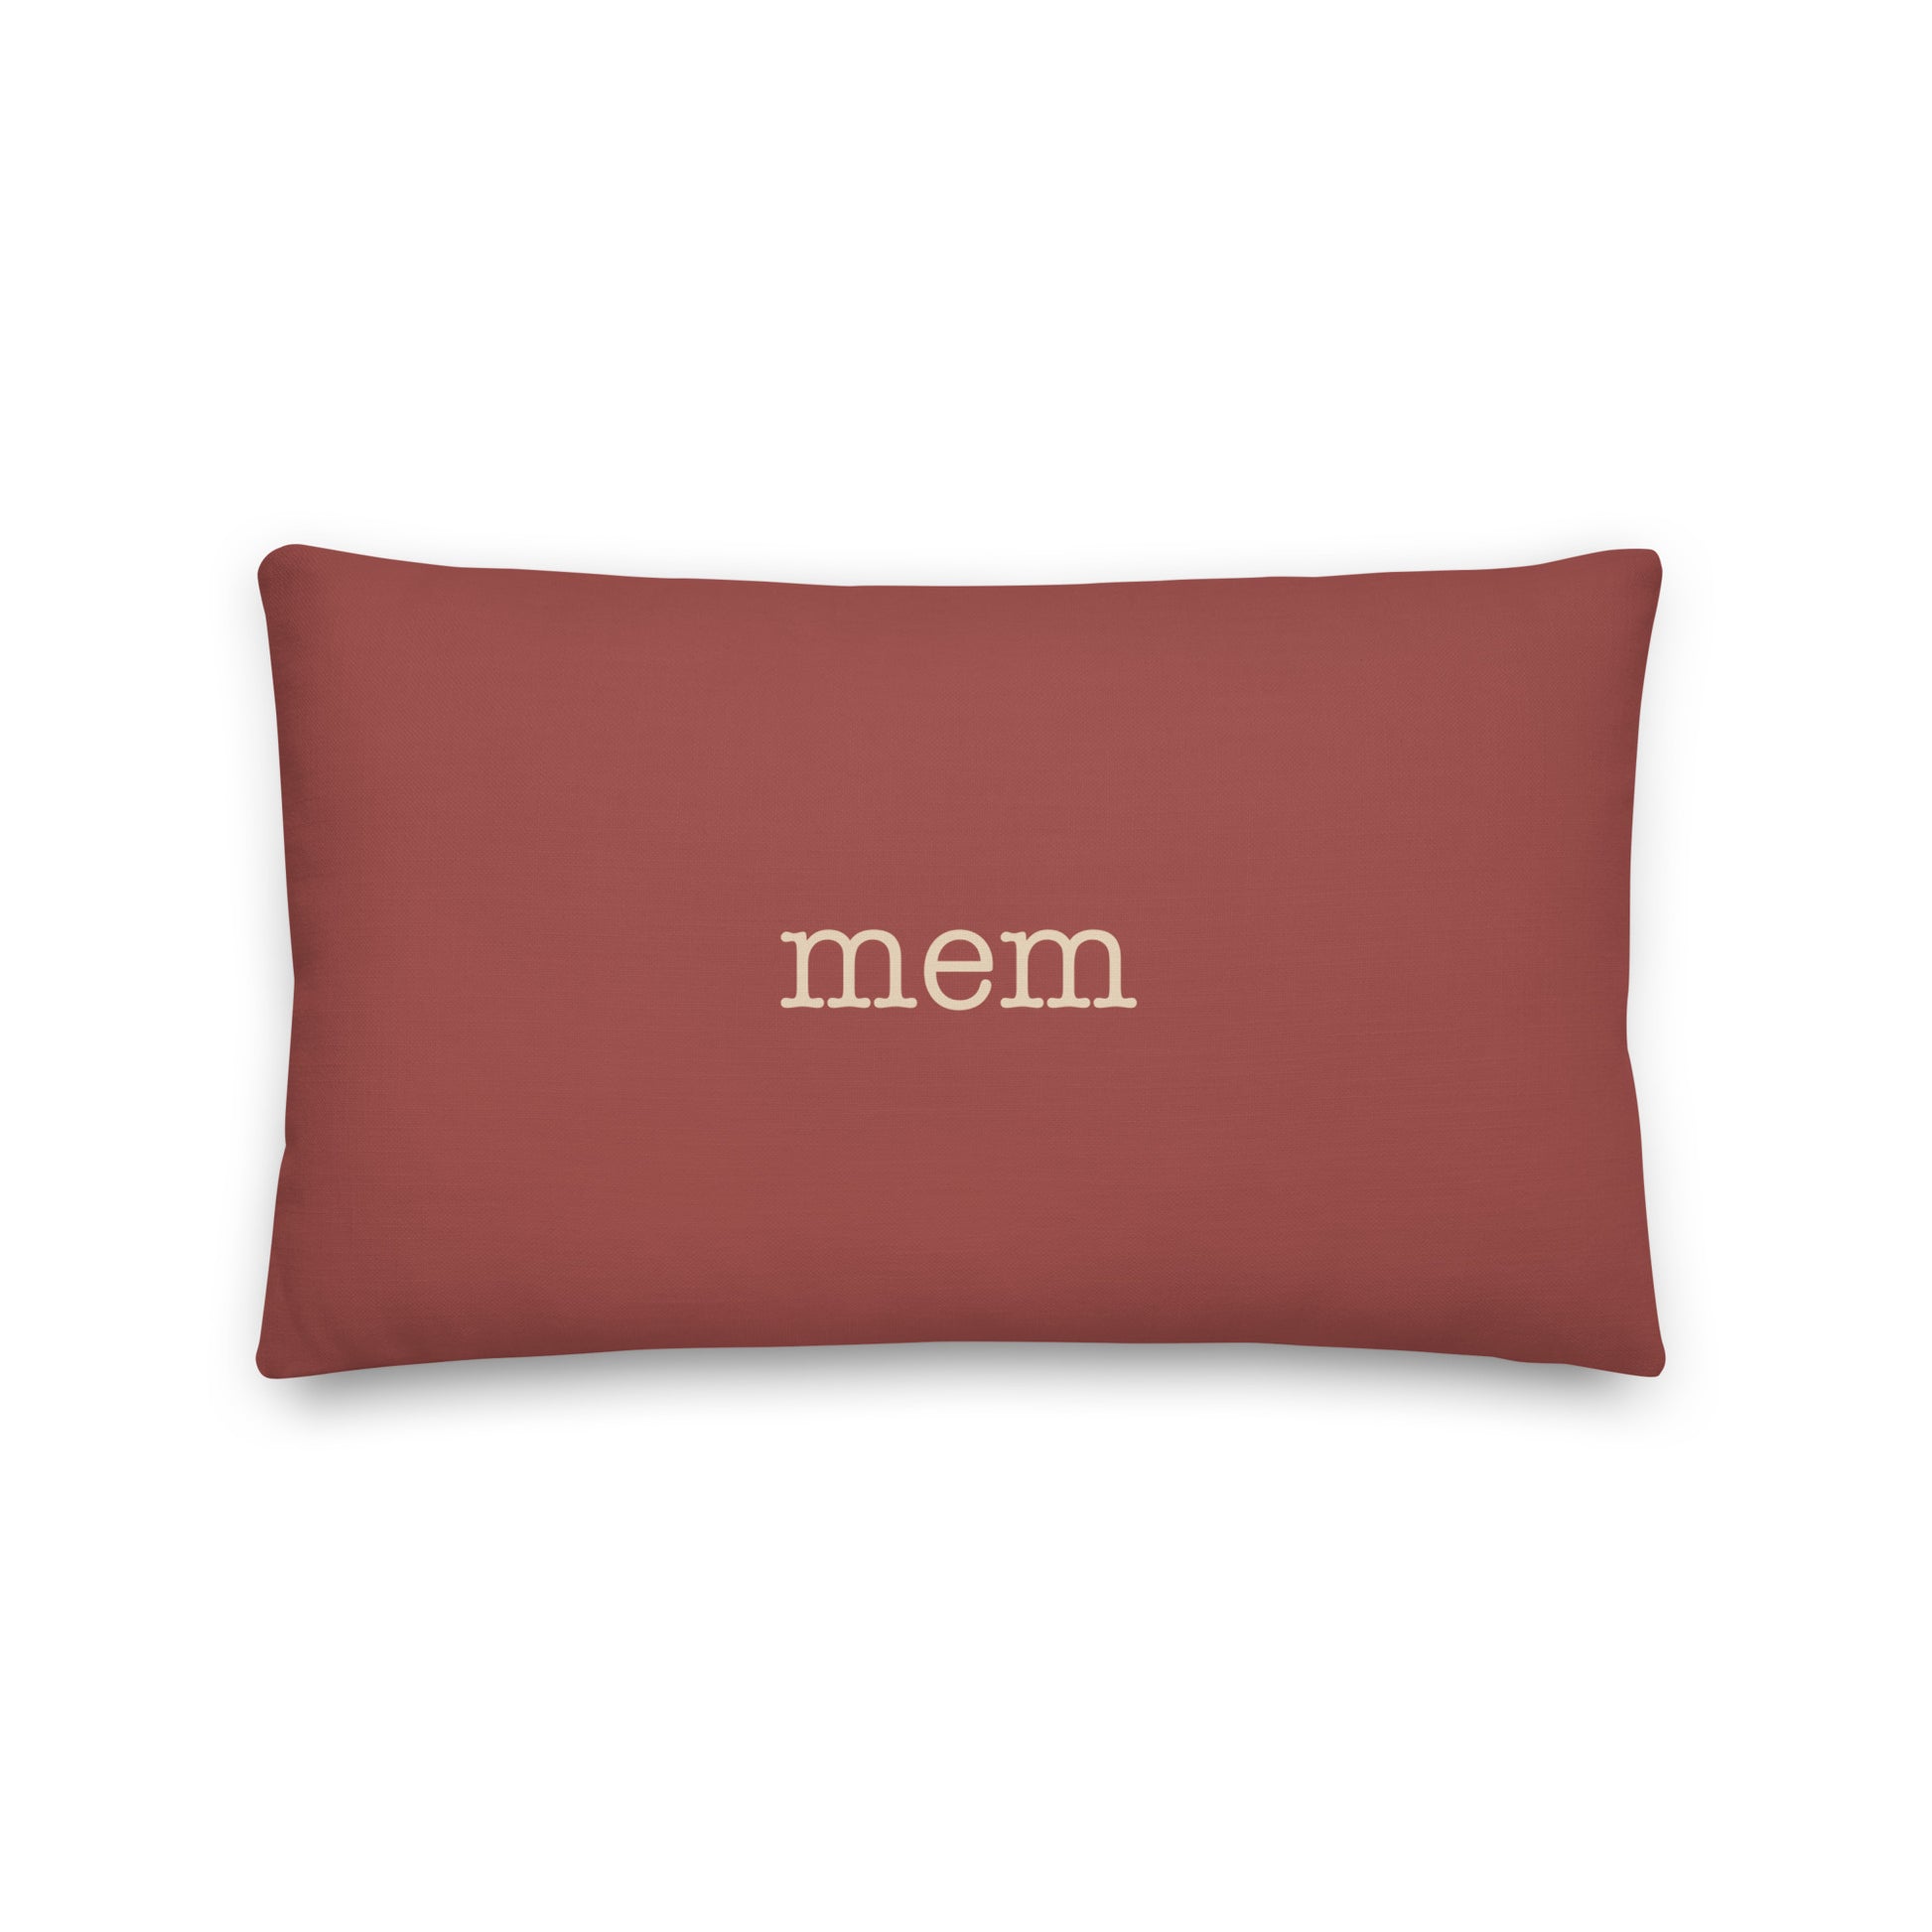 Typewriter Pillow - Terra Cotta • MEM Memphis • YHM Designs - Image 02